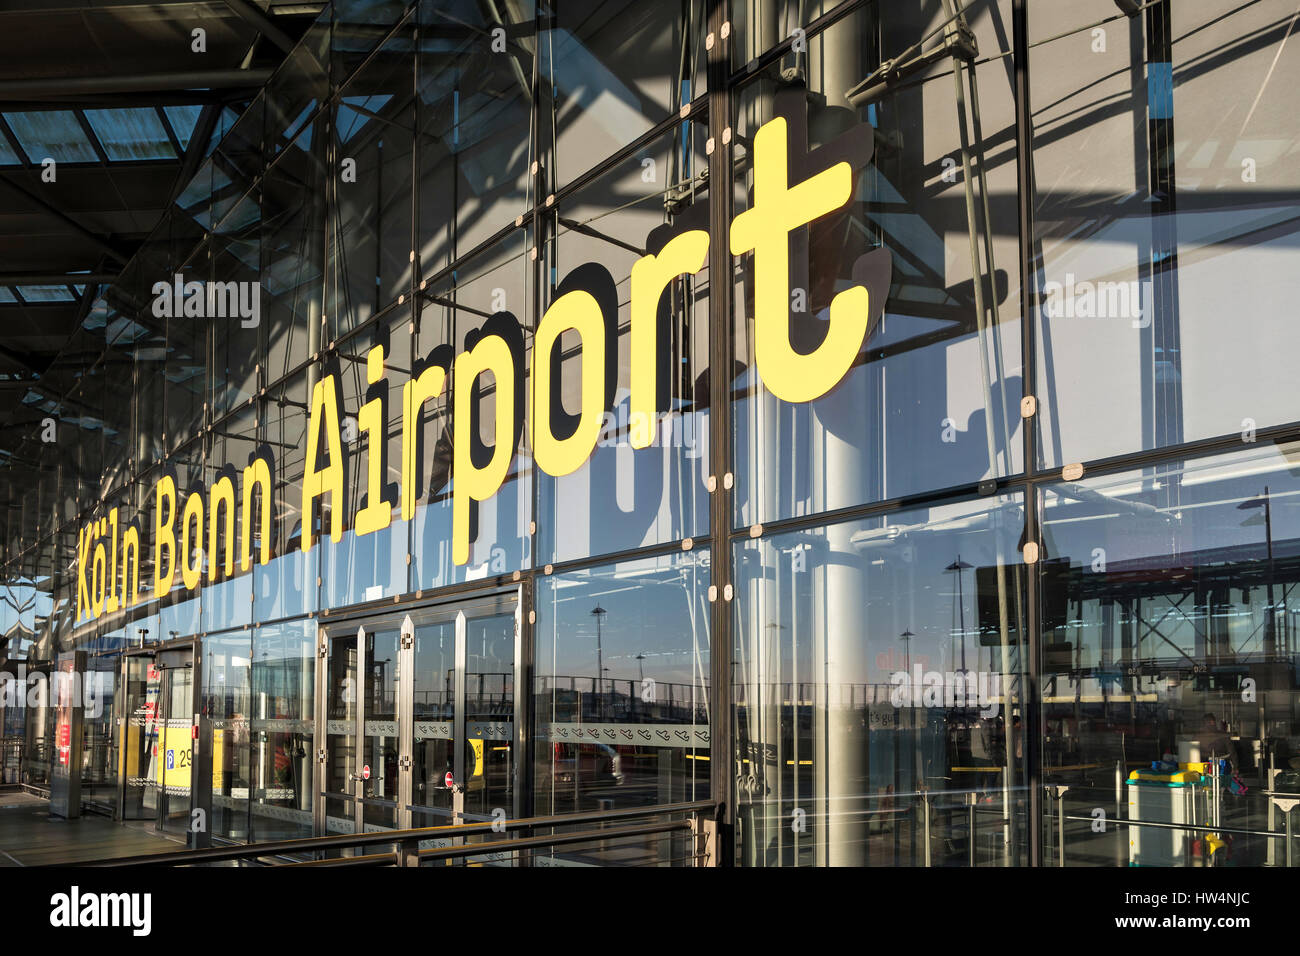 L'aéroport de Cologne Bonn (Fondation Konrad Adenauer) - Bâtiment principal du Terminal 2. Unités de trafic par l'aéroport est en cinquième position en Allemagne. Banque D'Images